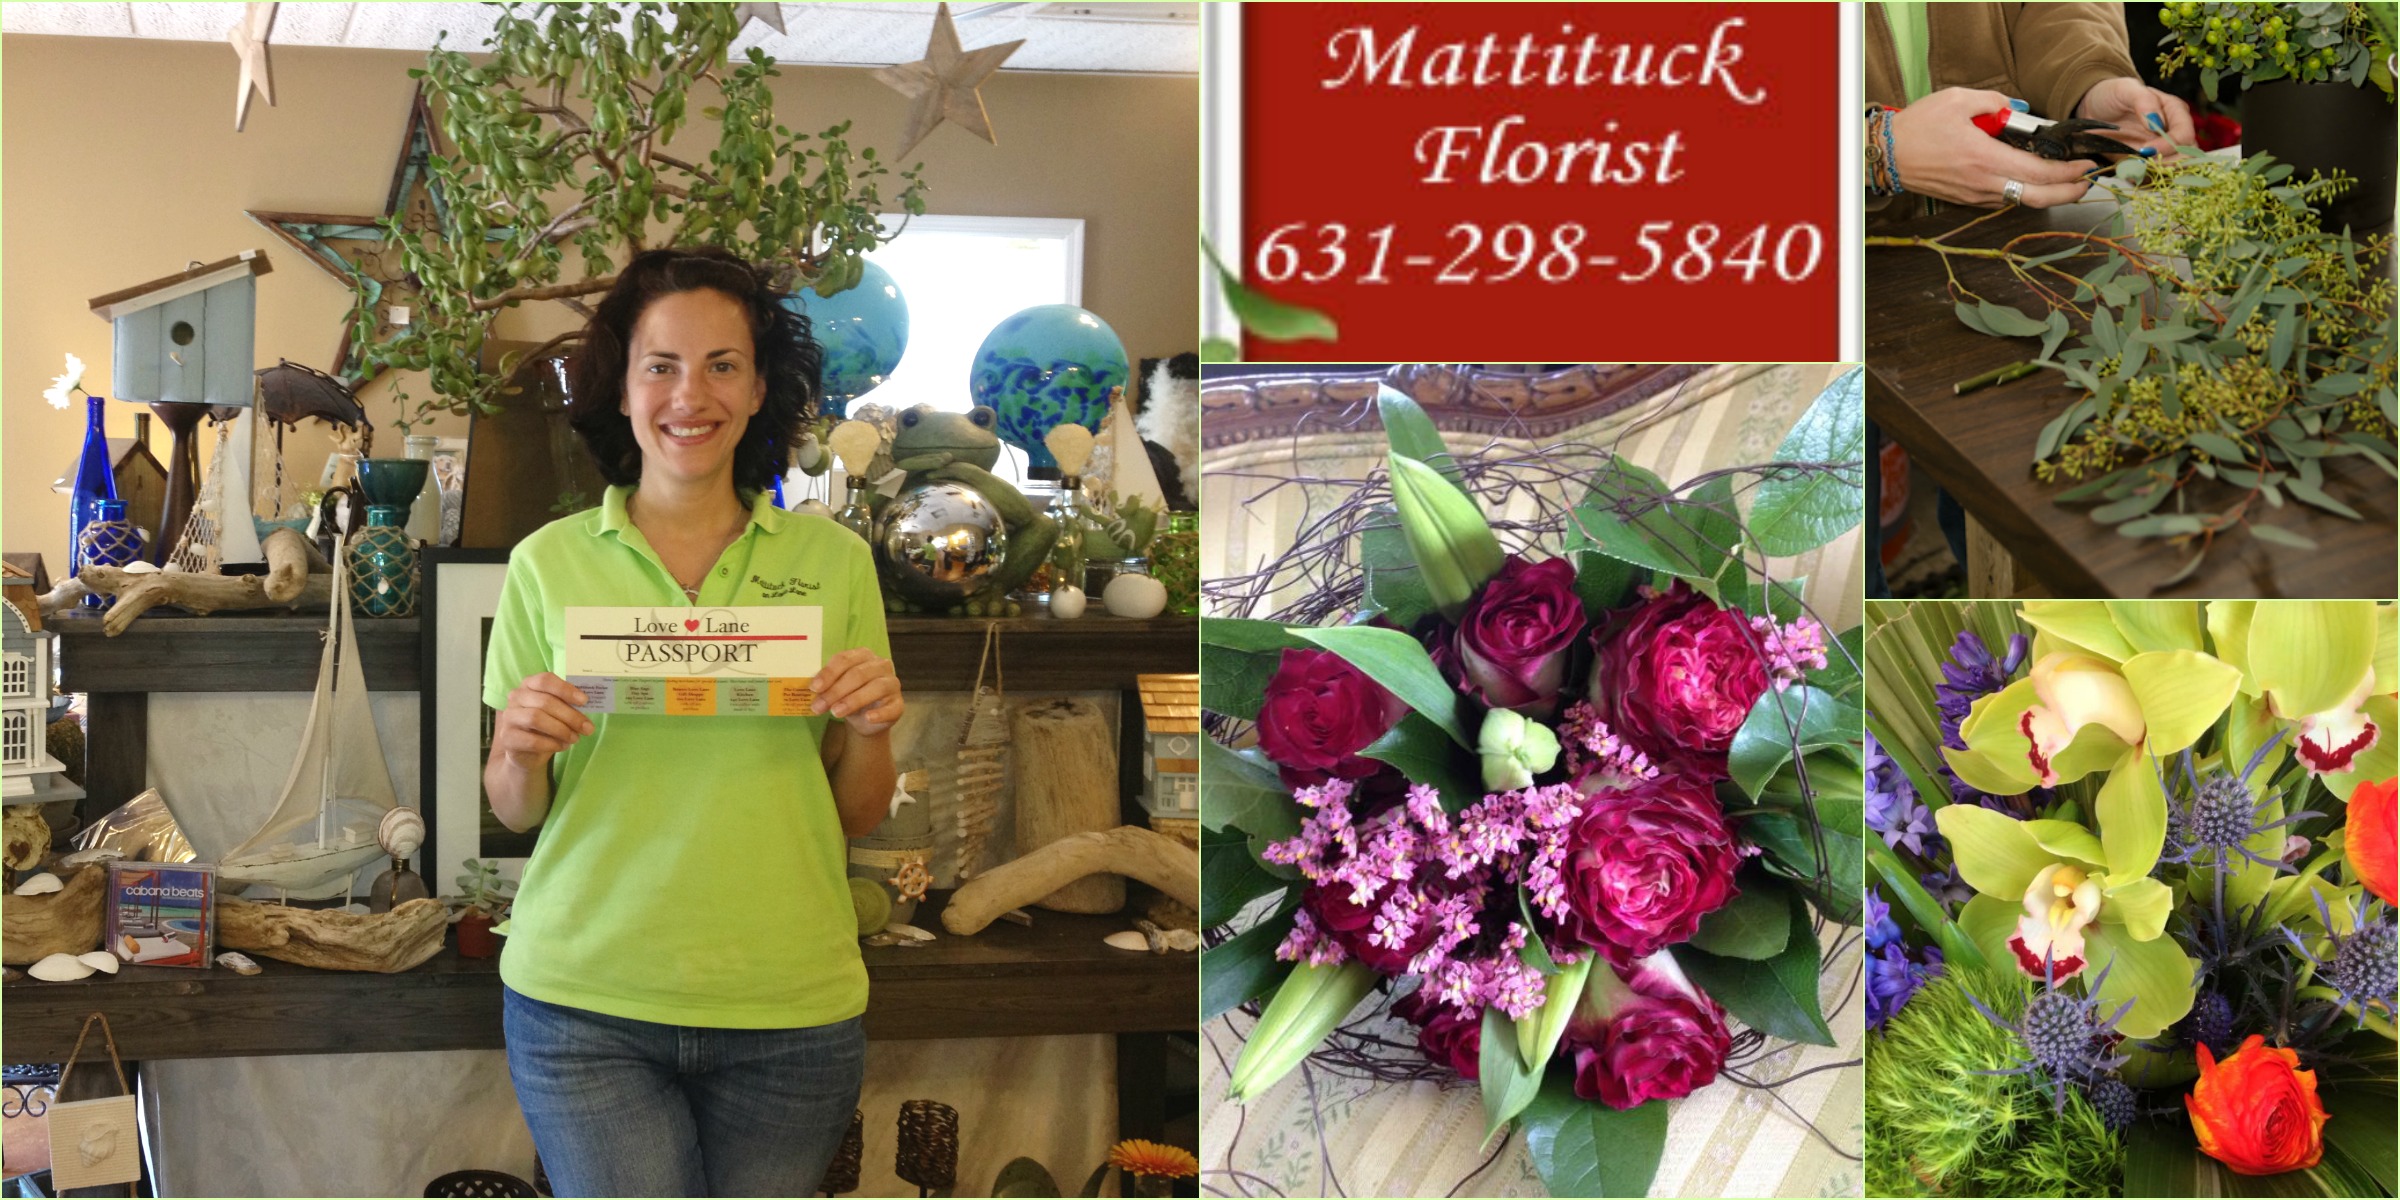 Mattituck Florist & Gift Shop